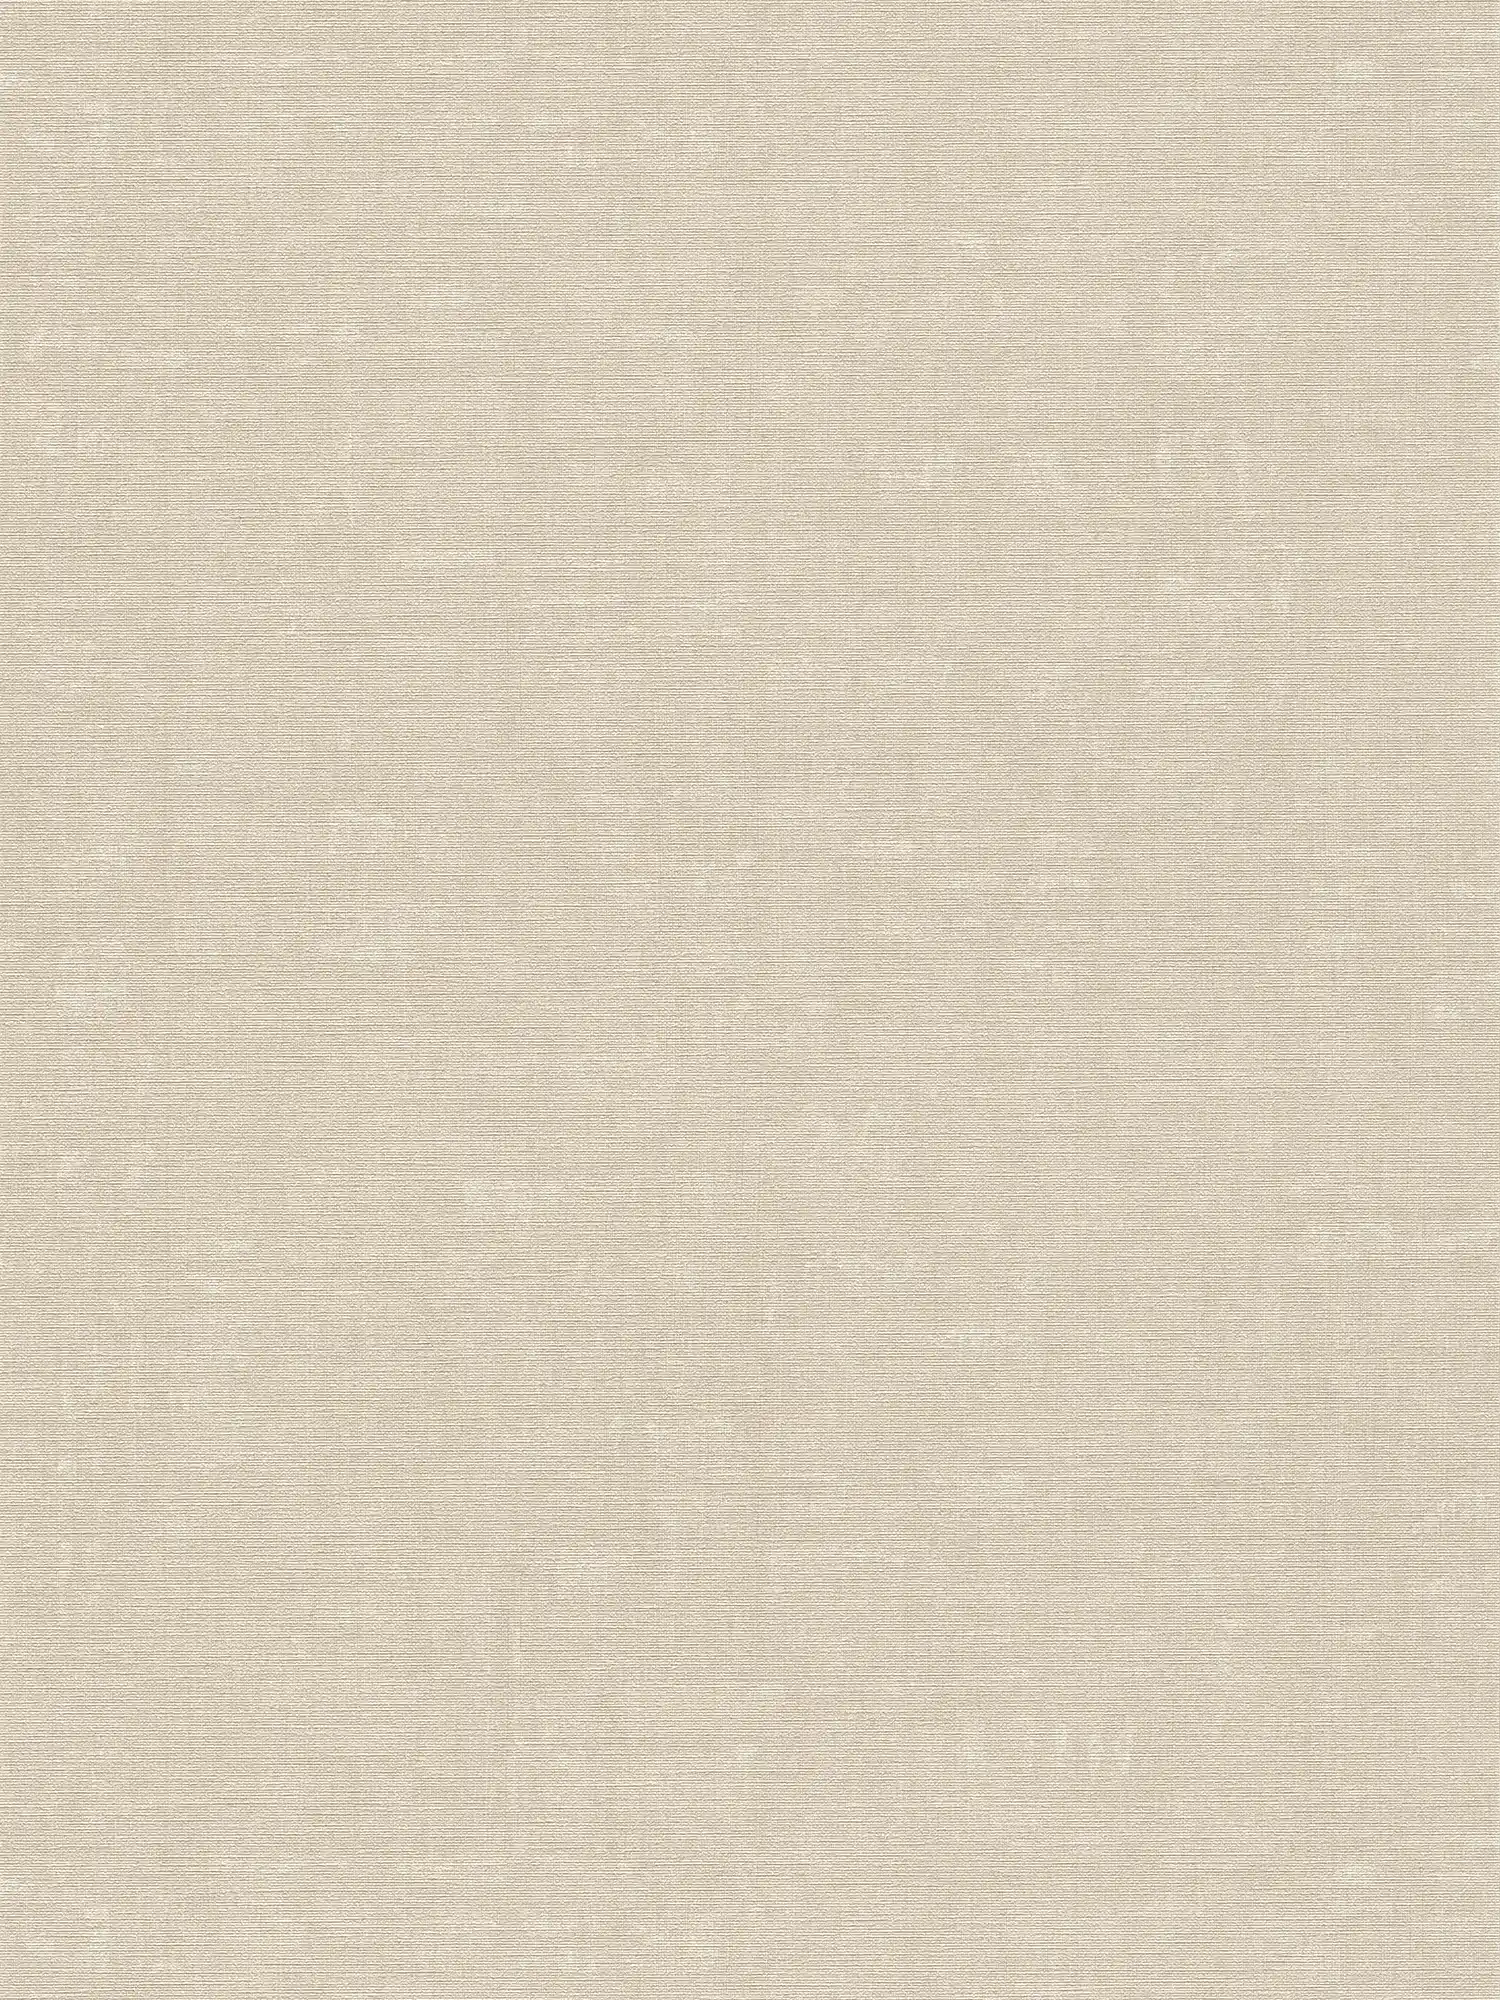 Carta da parati in tessuto non tessuto a tinta unita con effetto strutturato - grigio, beige
